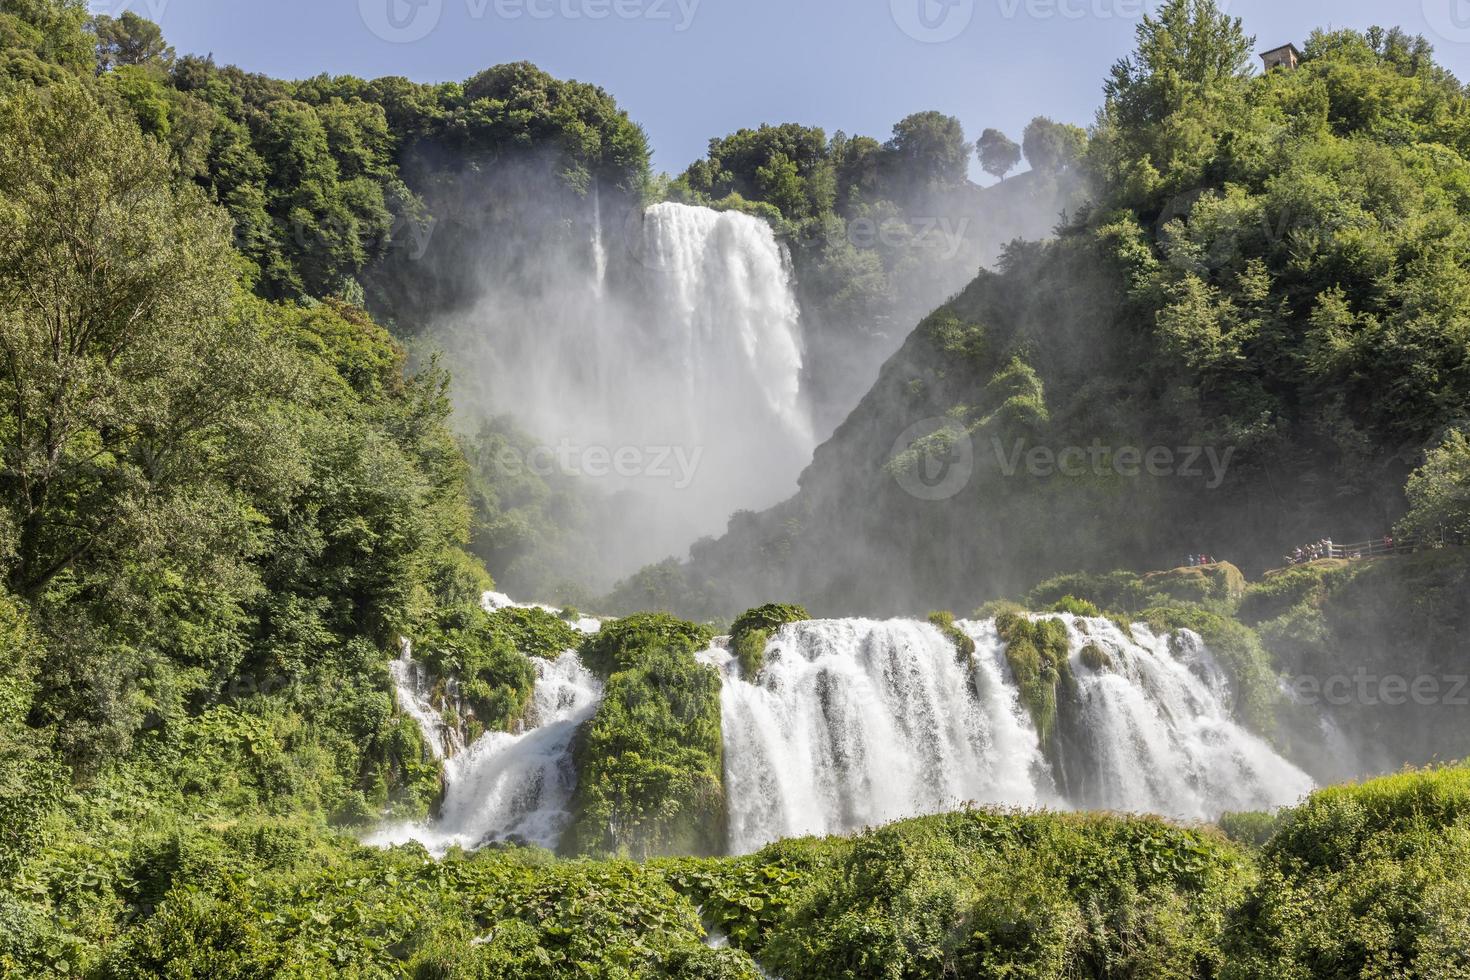 cachoeira de marmore na região de umbria, itália. incrível cascata espirrando na natureza. foto